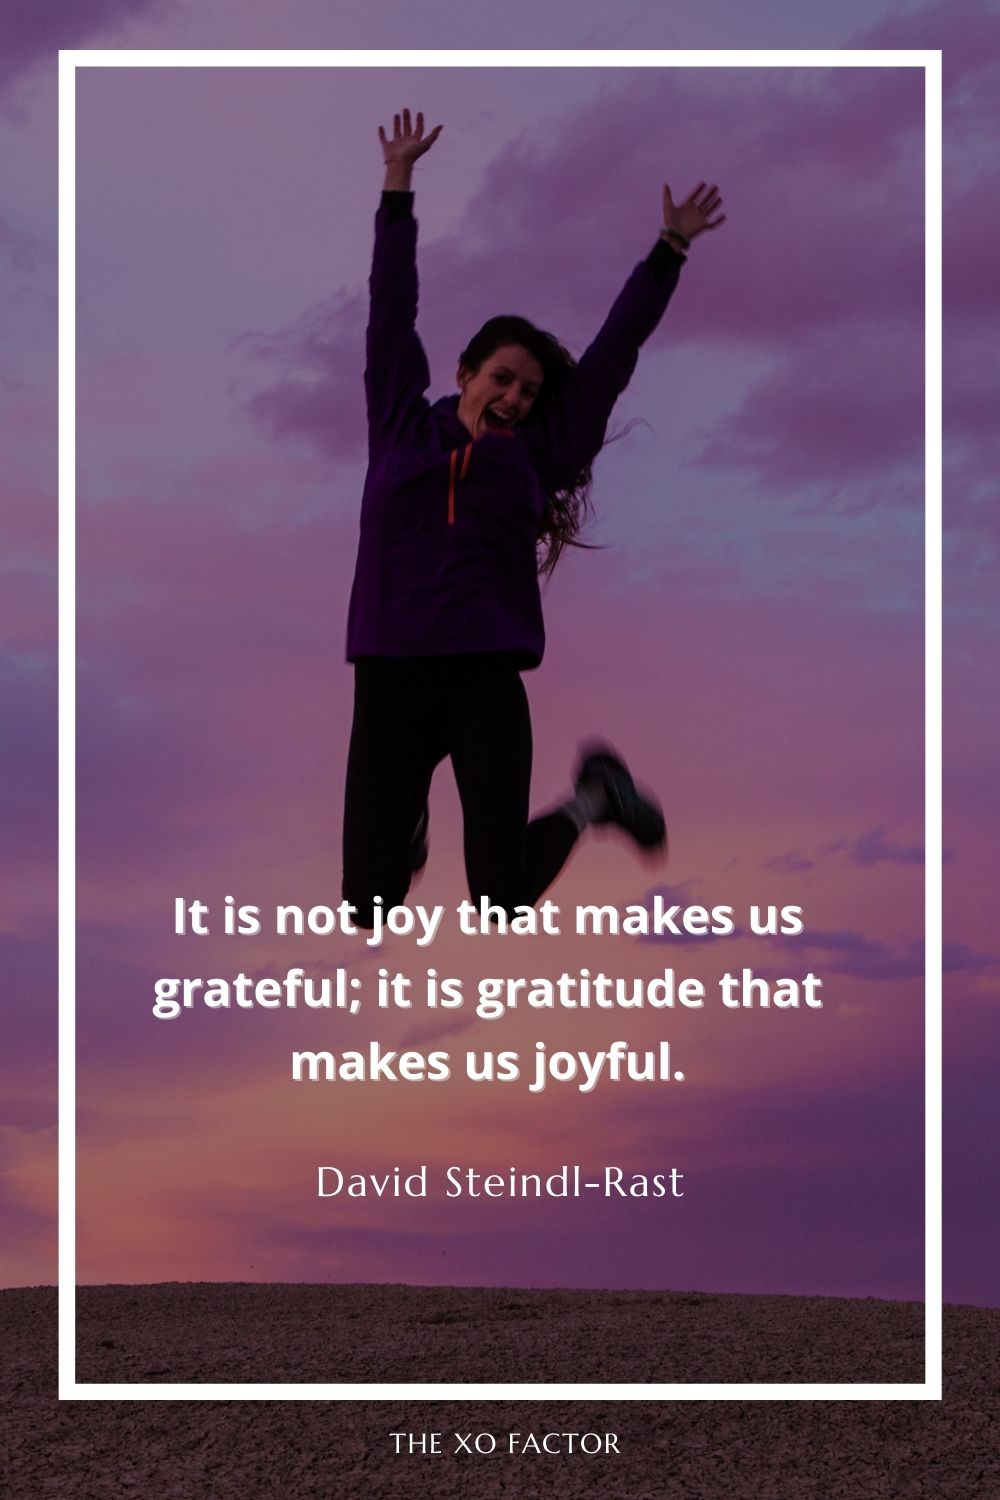 It is not joy that makes us grateful; it is gratitude that makes us joyful.